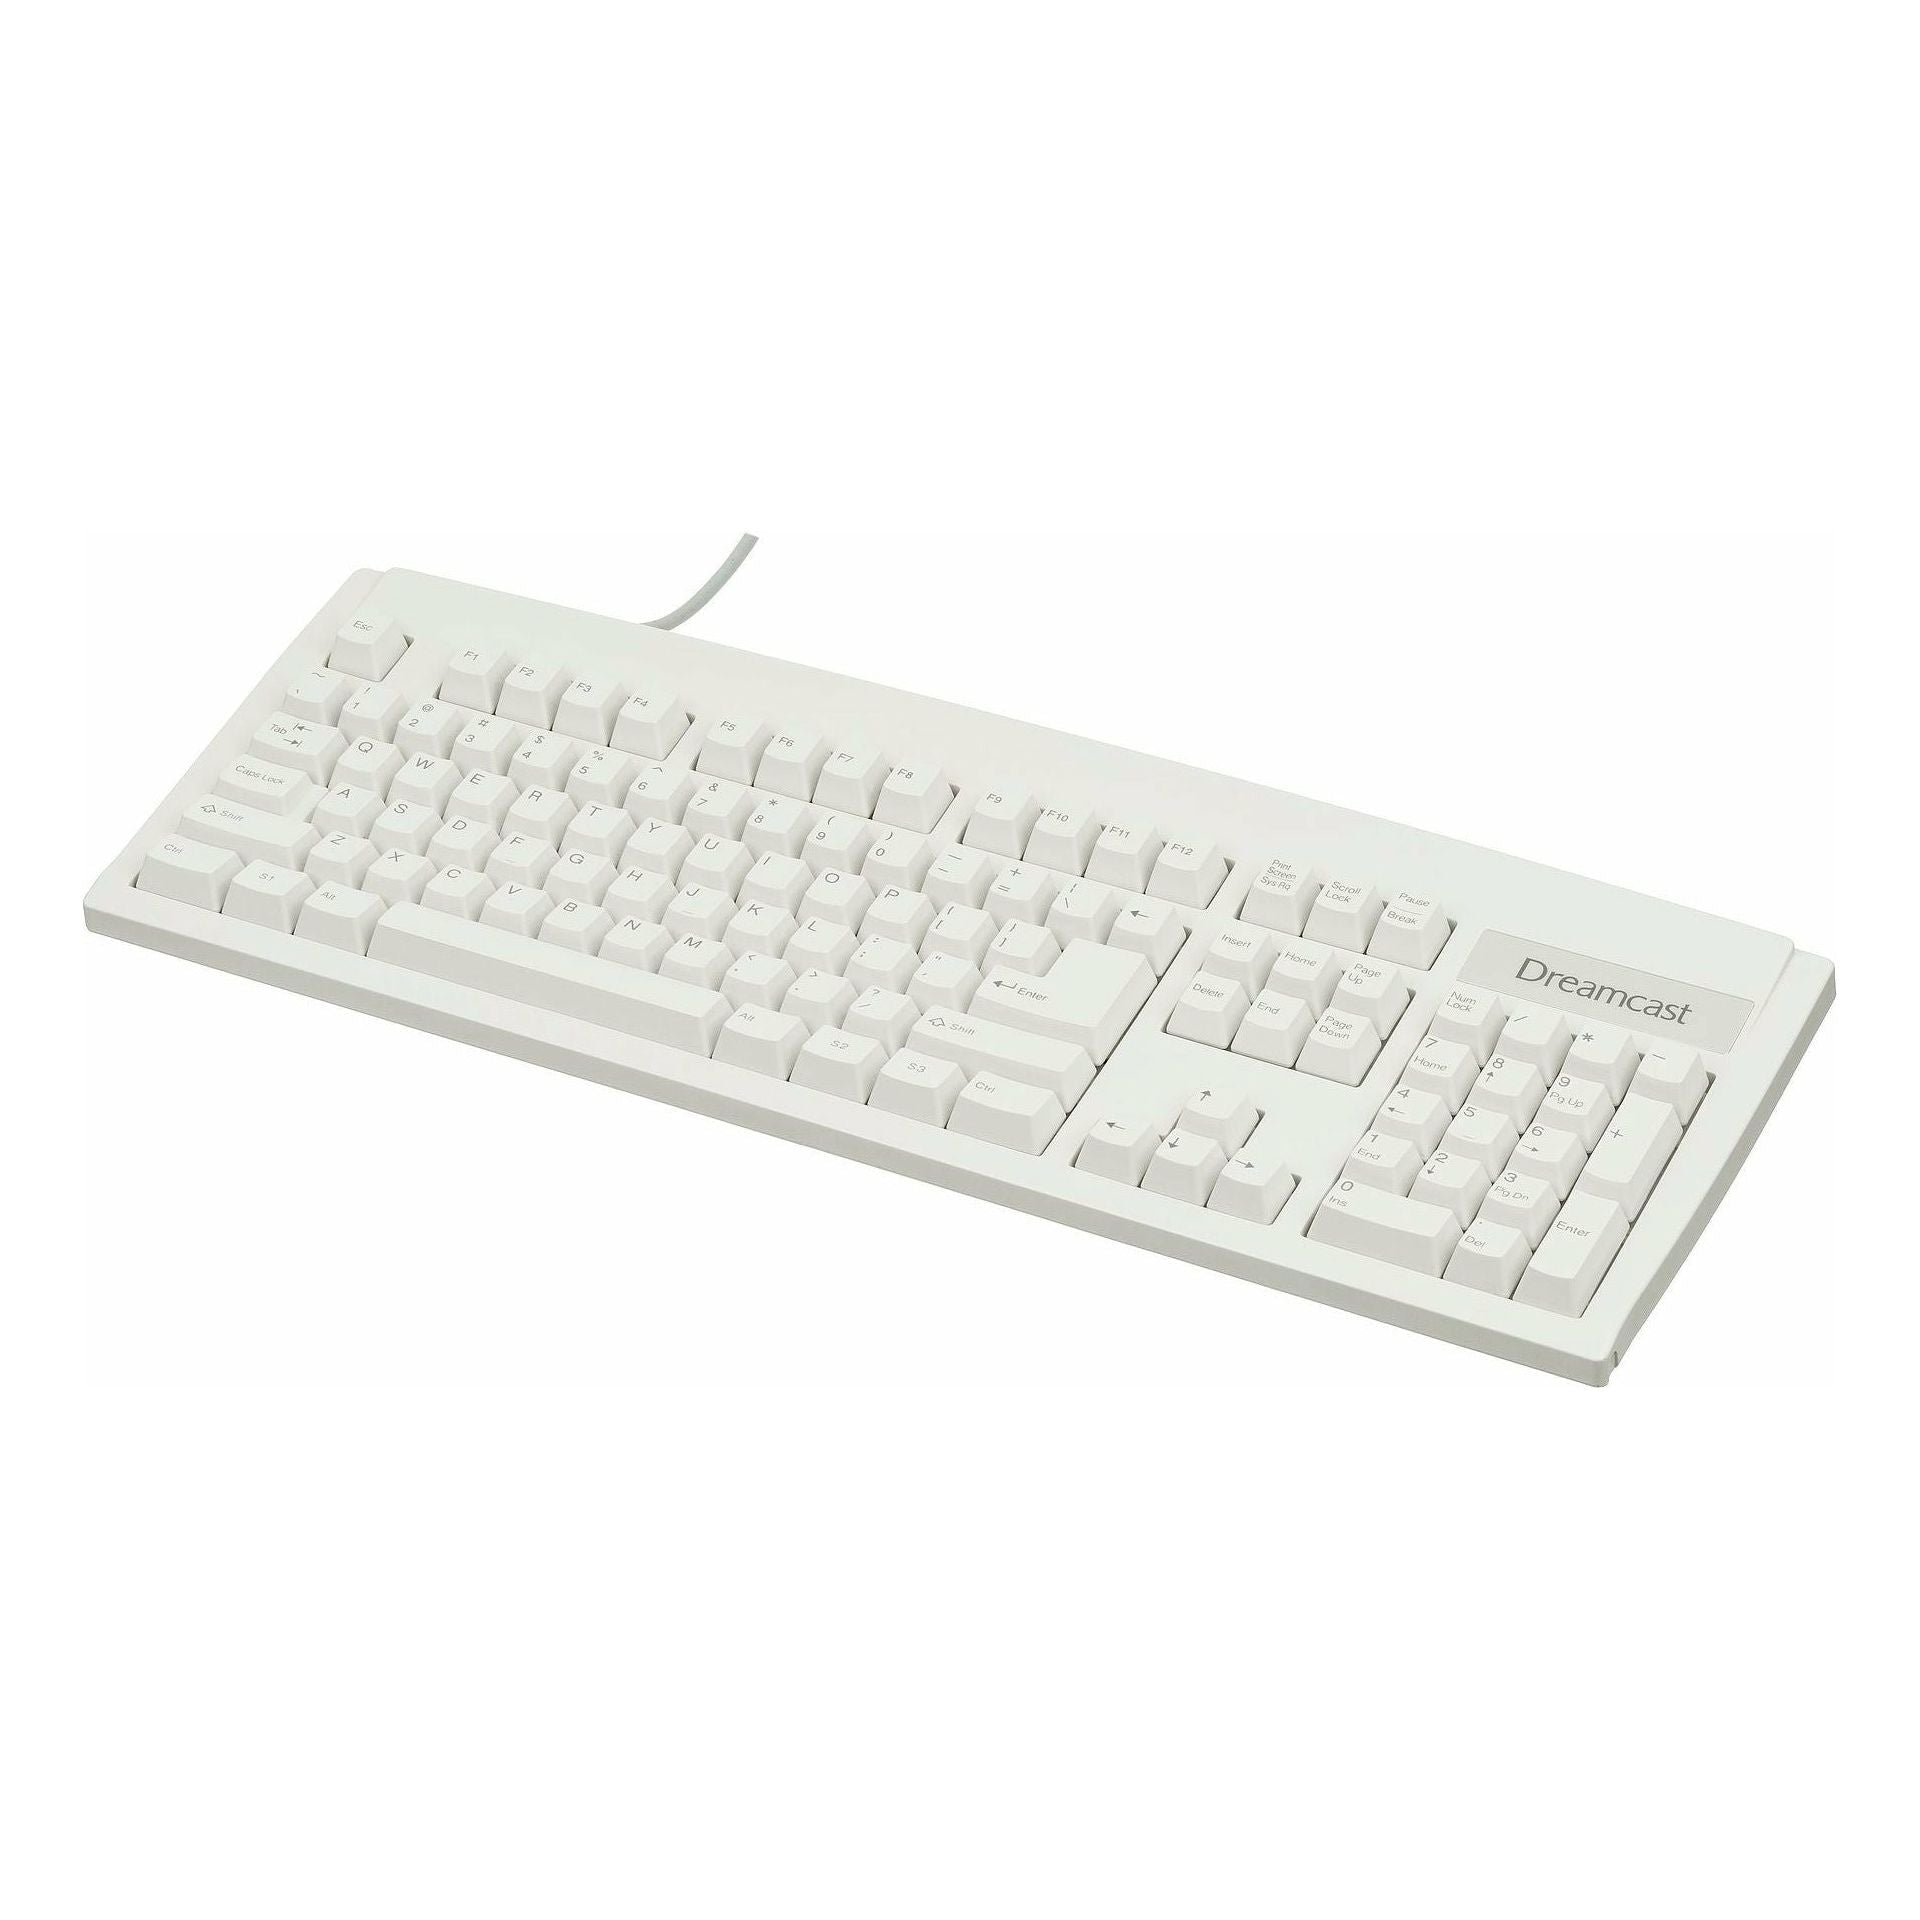 Dreamcast - Keyboard